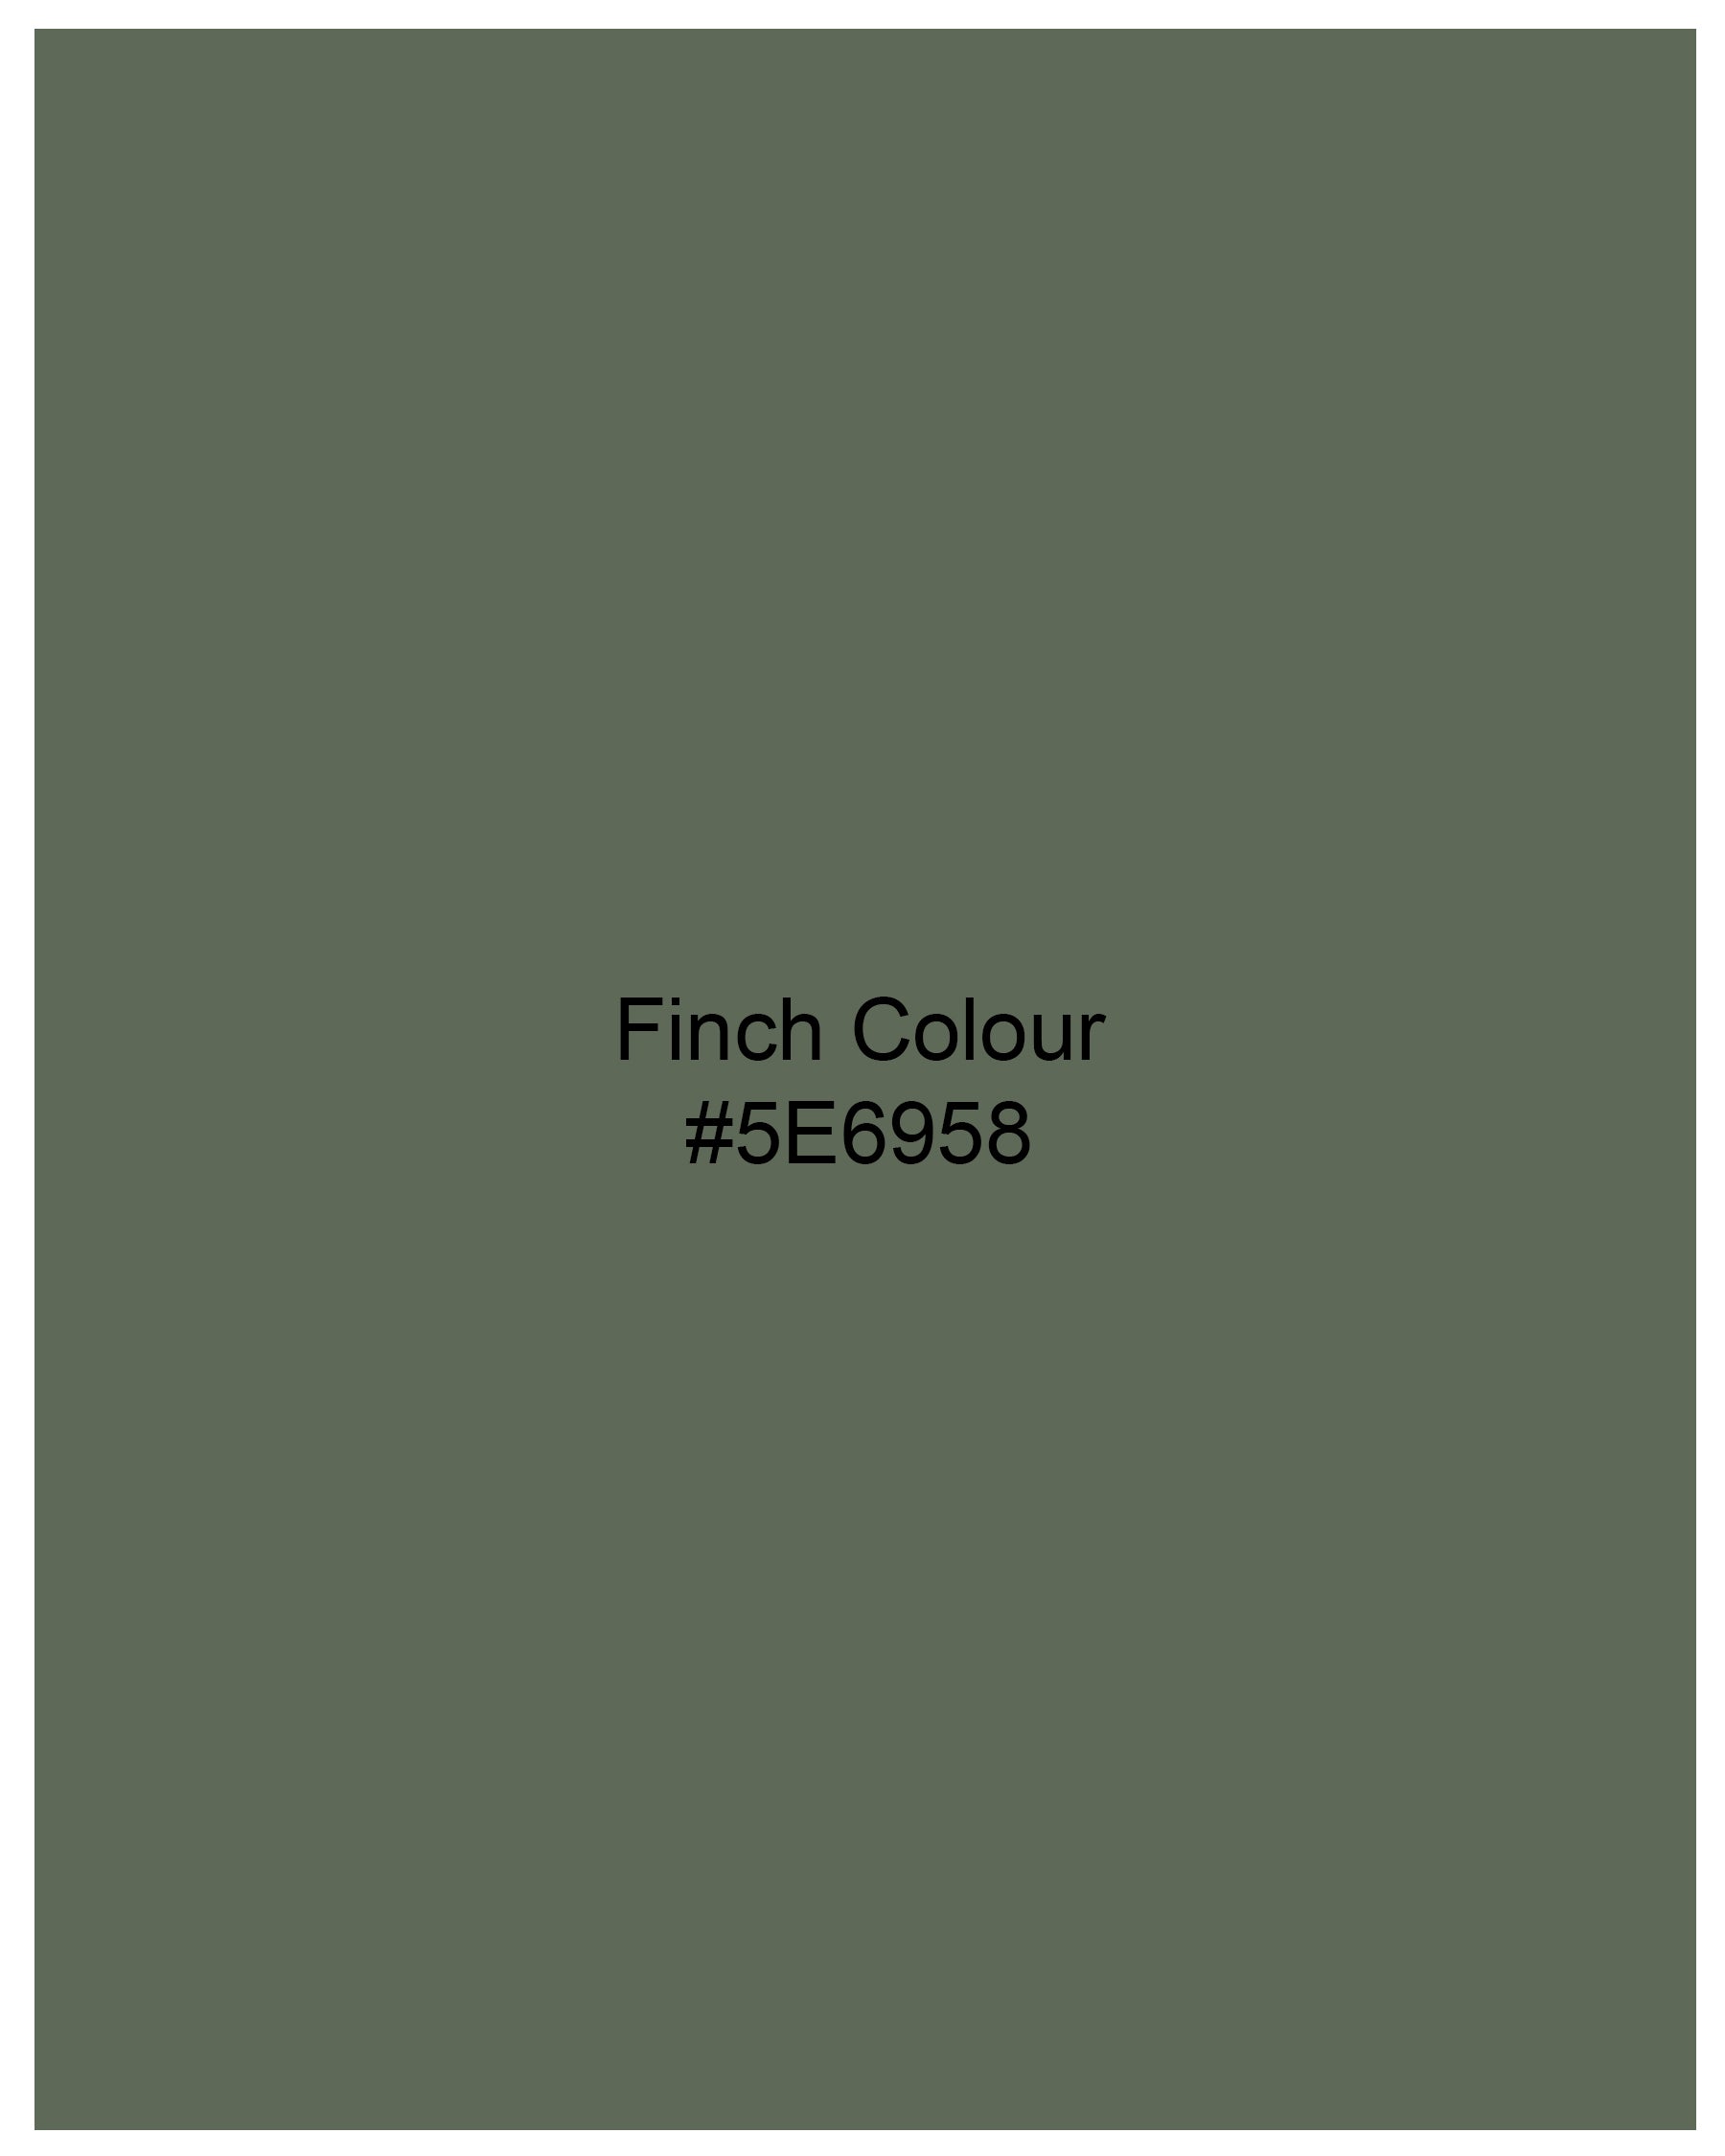 Finch Green Luxurious Linen Shirt 7897-BLK-38, 7897-BLK-H-38, 7897-BLK-39, 7897-BLK-H-39, 7897-BLK-40, 7897-BLK-H-40, 7897-BLK-42, 7897-BLK-H-42, 7897-BLK-44, 7897-BLK-H-44, 7897-BLK-46, 7897-BLK-H-46, 7897-BLK-48, 7897-BLK-H-48, 7897-BLK-50, 7897-BLK-H-50, 7897-BLK-52, 7897-BLK-H-52